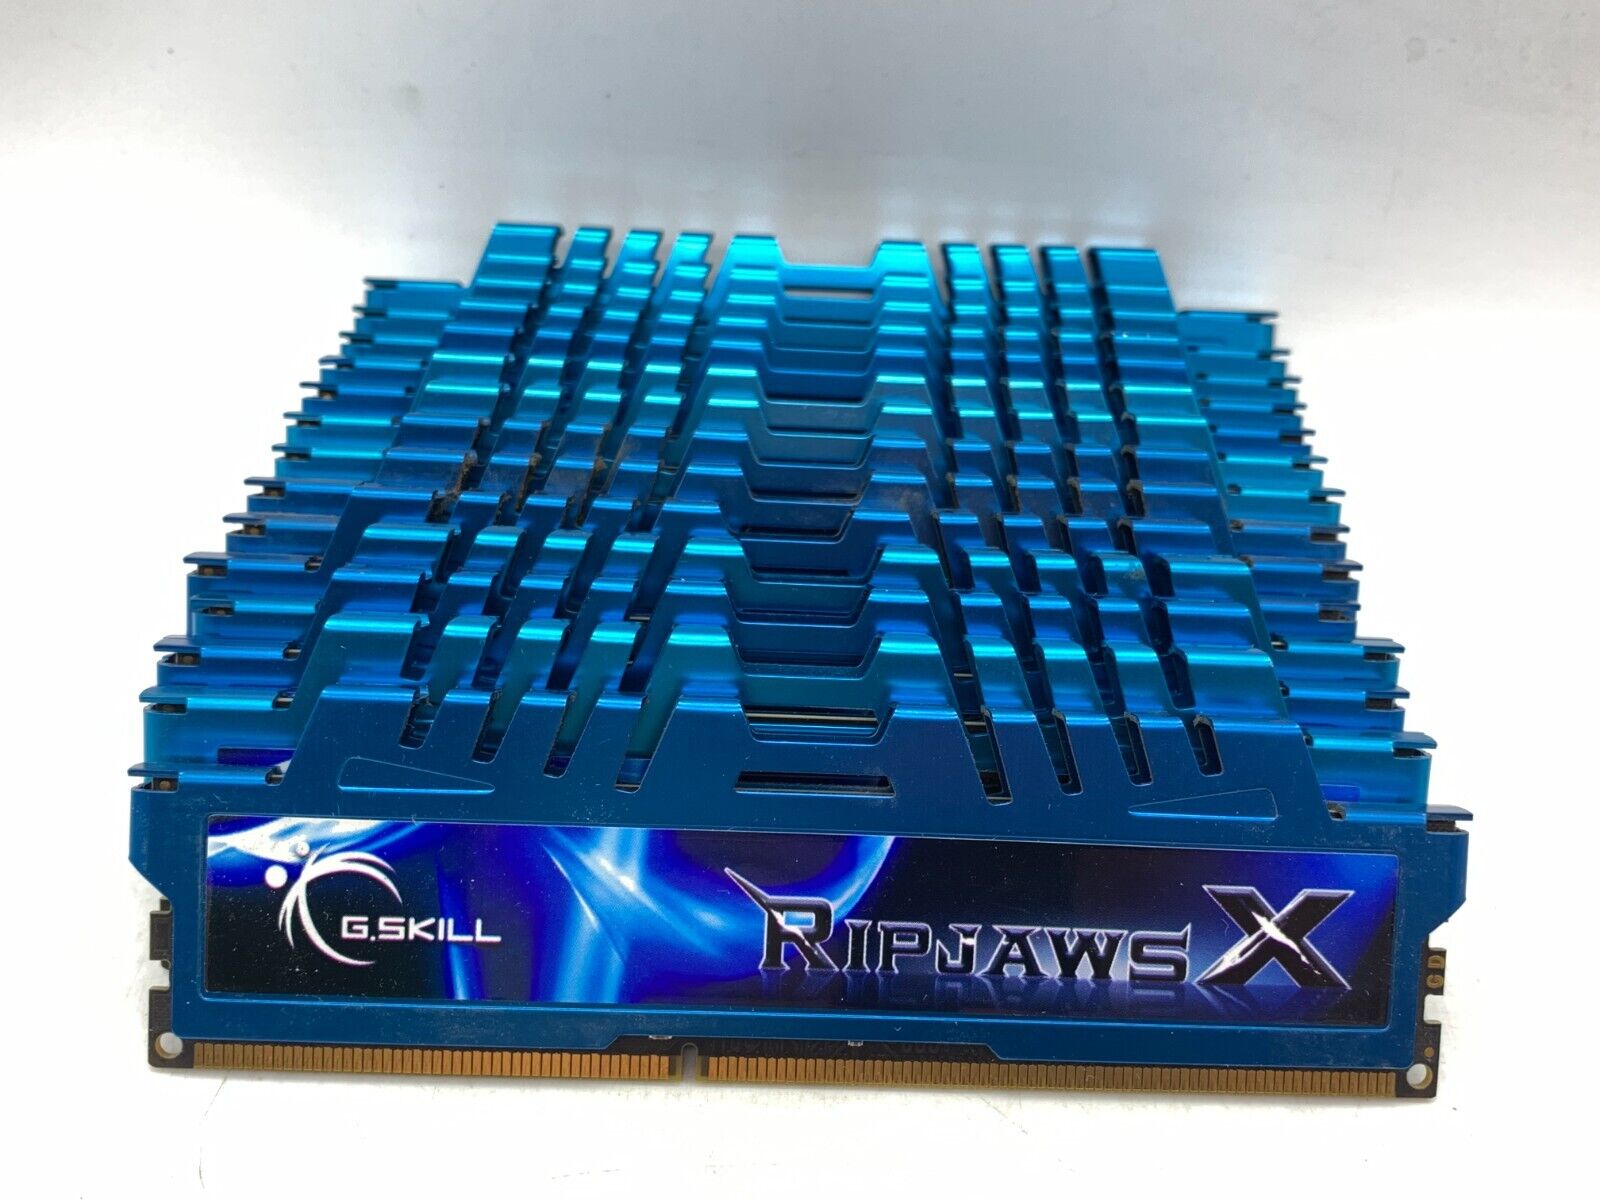 LOT of 14 G.Skill Ripjaws X Blue 8GB DDR3 PC3-12800 1600 Desktop RAM Memory